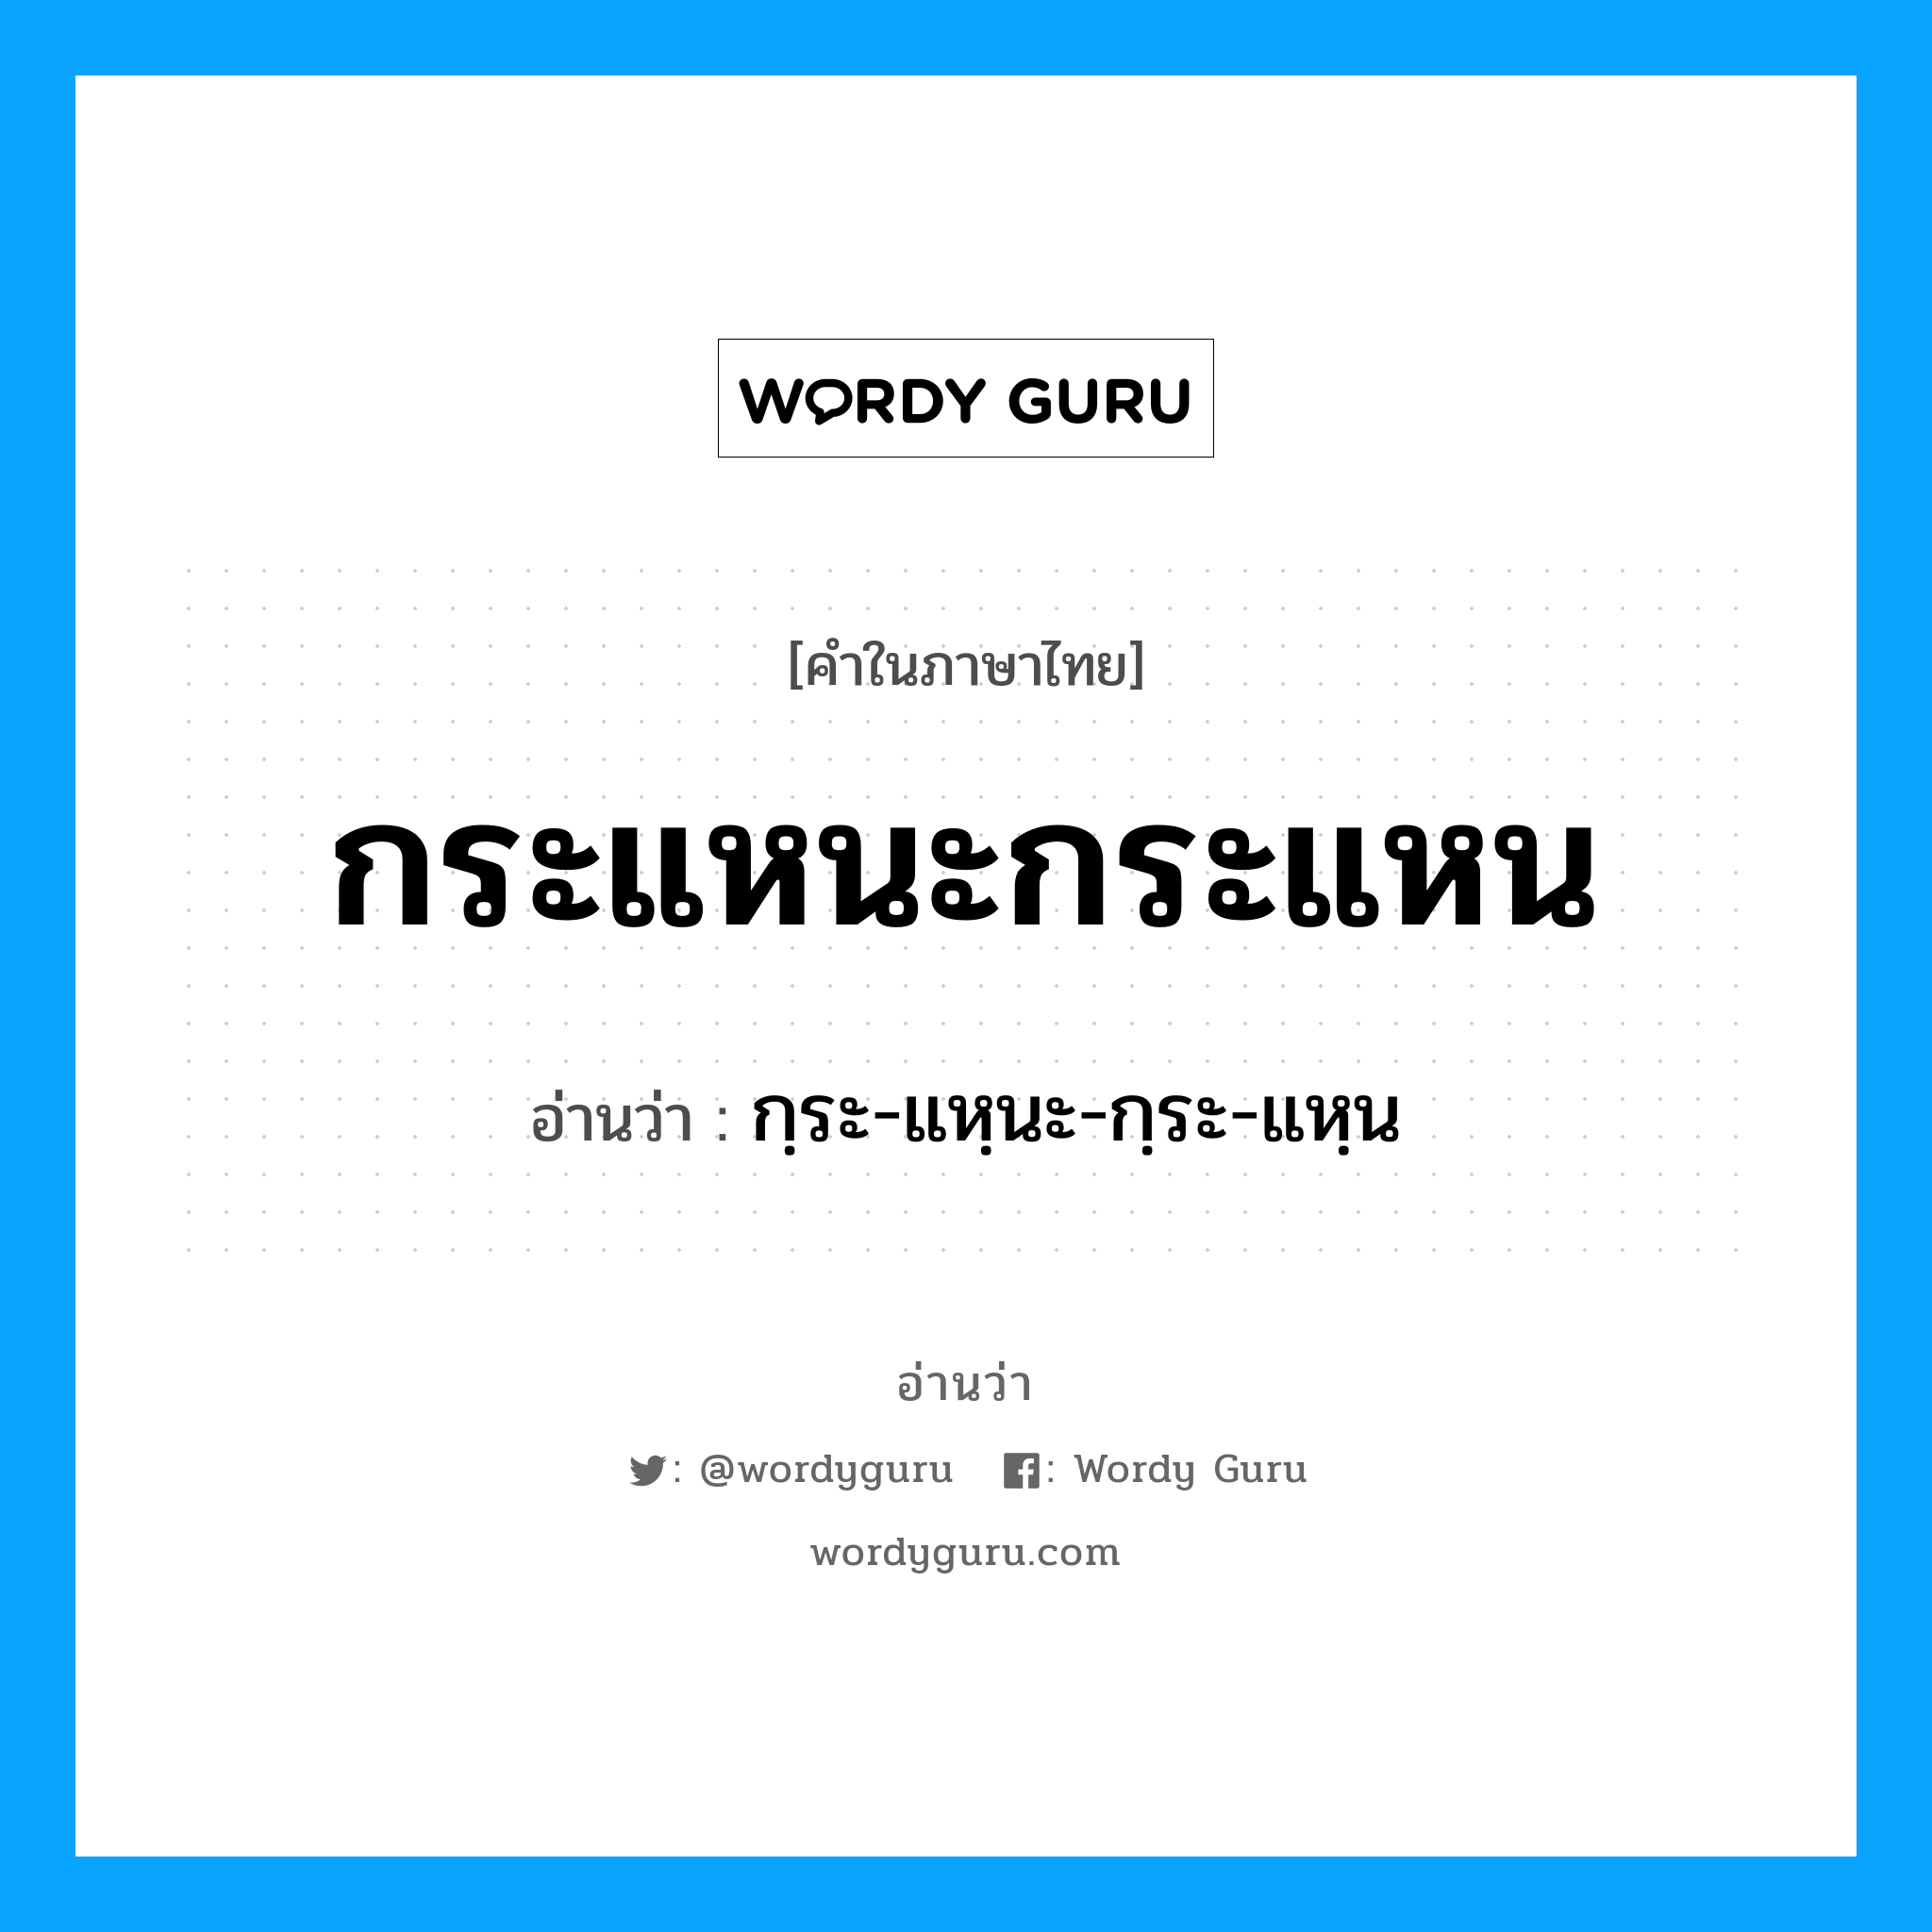 กฺระ-แหฺนะ-กฺระ-แหฺน เป็นคำอ่านของคำไหน?, คำในภาษาไทย กฺระ-แหฺนะ-กฺระ-แหฺน อ่านว่า กระแหนะกระแหน